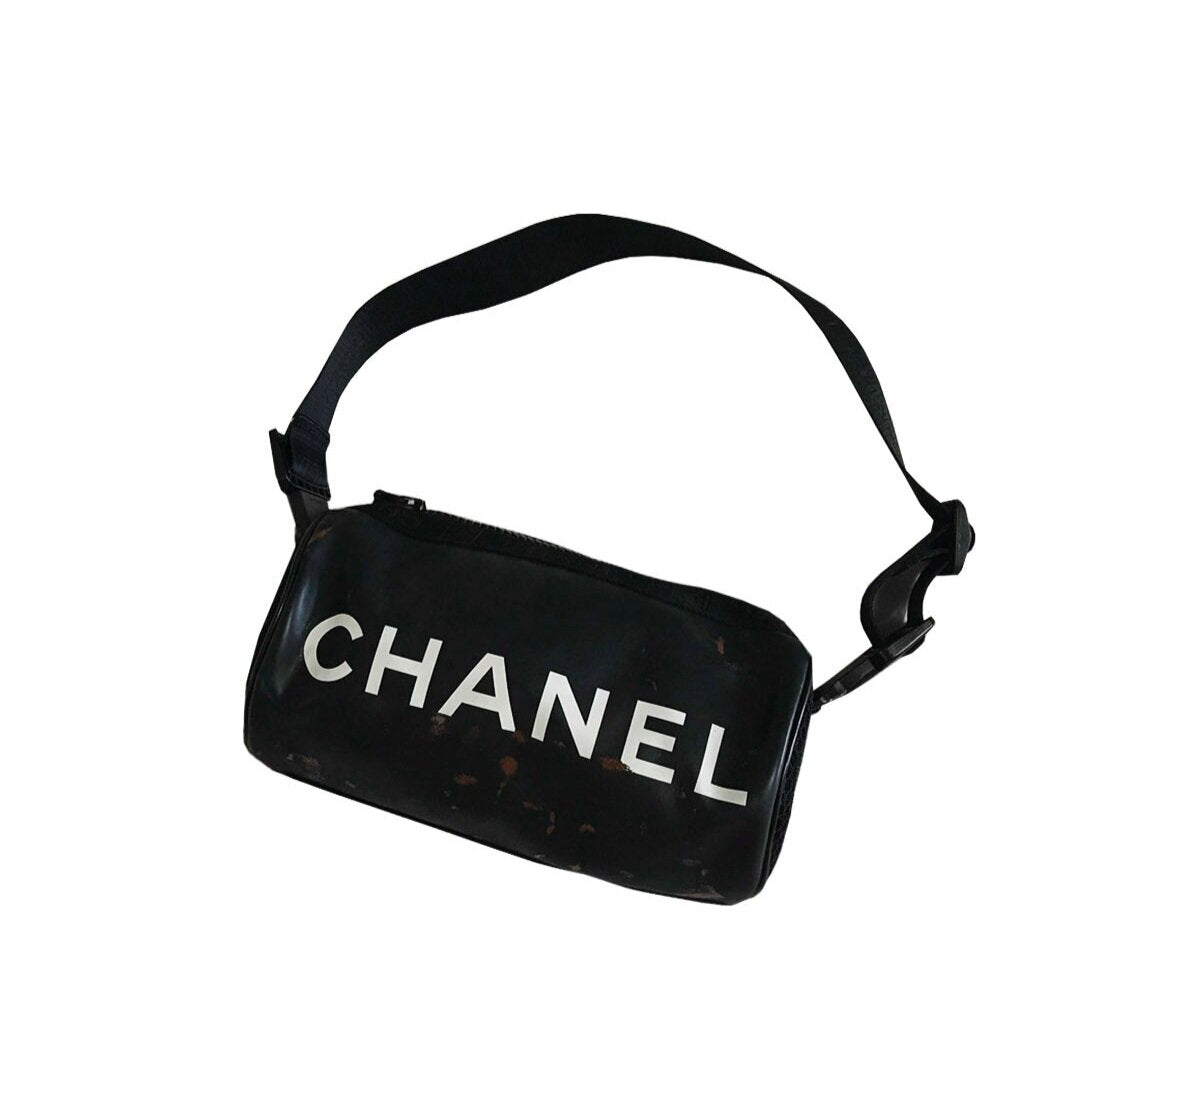 CHANEL, Bags, Chanel Black Vinyl Mesh Sports Line Duffle Bag